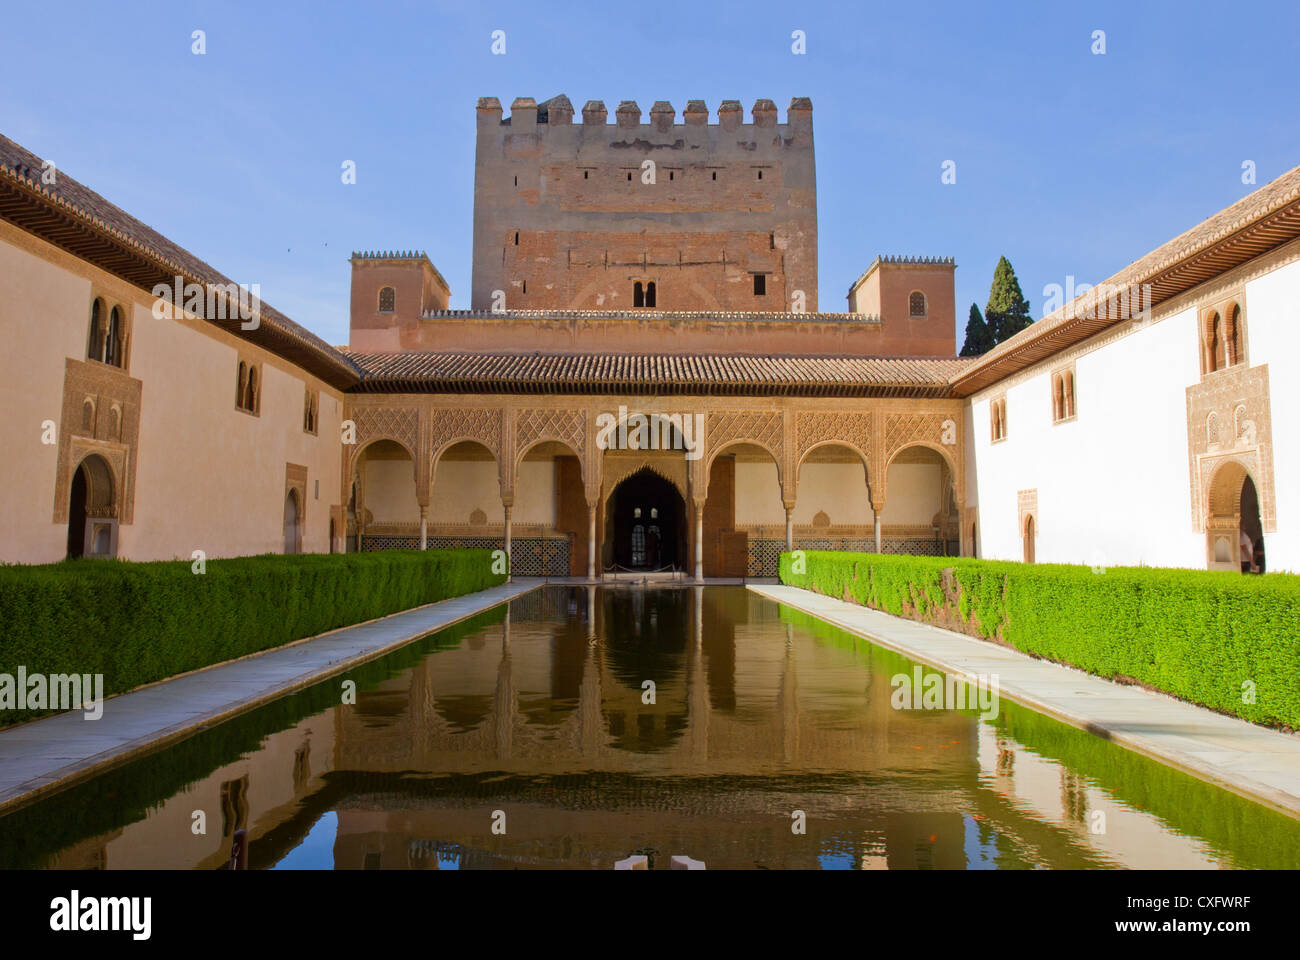 Patio de los Arrayanes (Court of the Myrtles) in La Alhambra, Granada, Spain Stock Photo